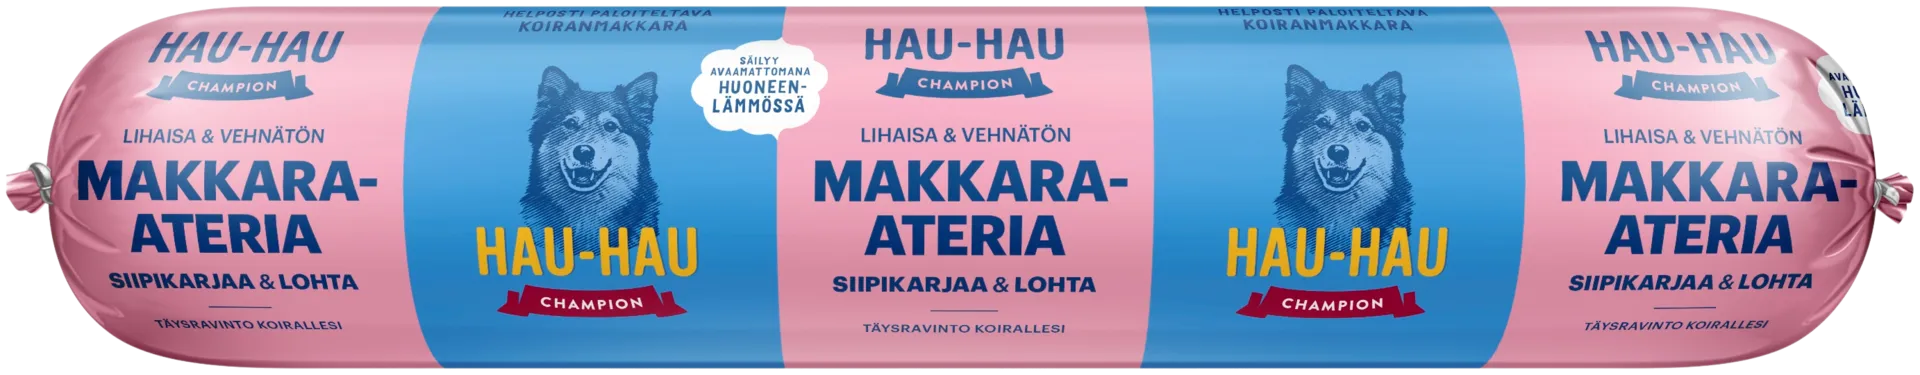 Hau-Hau Champion Makkara-ateria siipikarjaa ja lohta 500 g